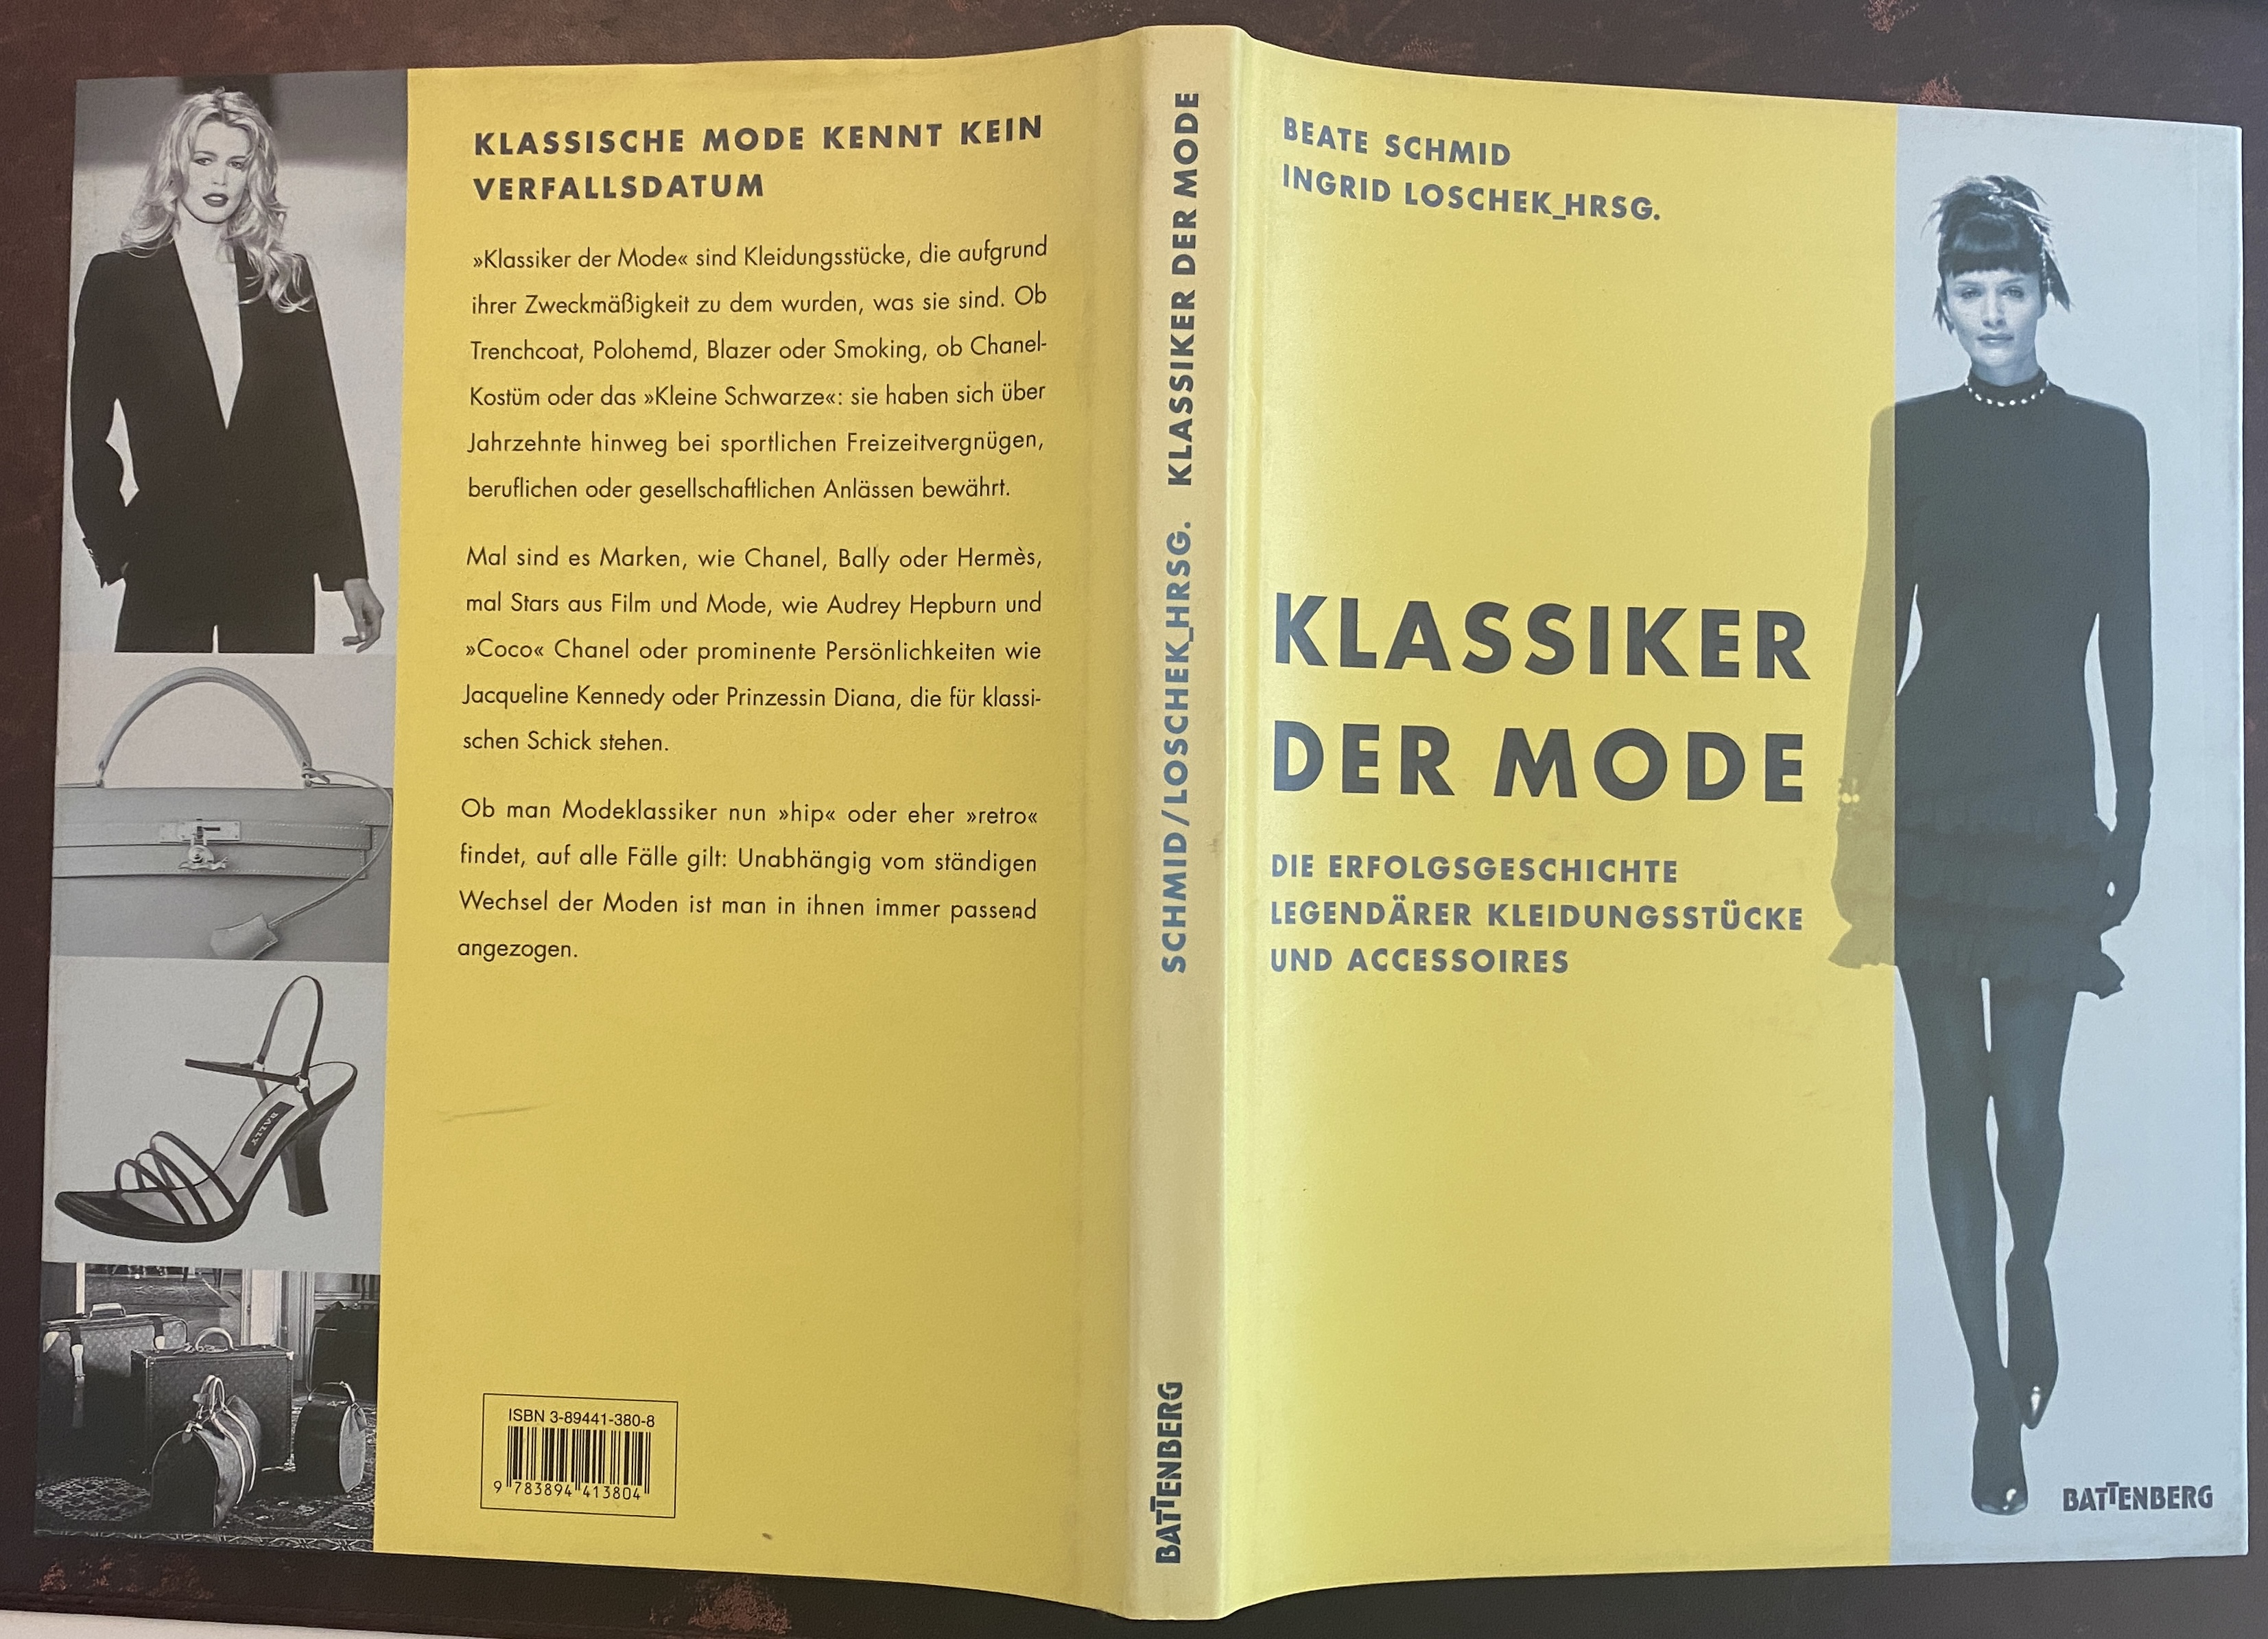 Klassiker der Mode. Die Erfolgsgeschichte legendärer Kleidungsstücke und Accessoires. - Schmid, Beate / Loschek, Ingrid (Hrsg.)